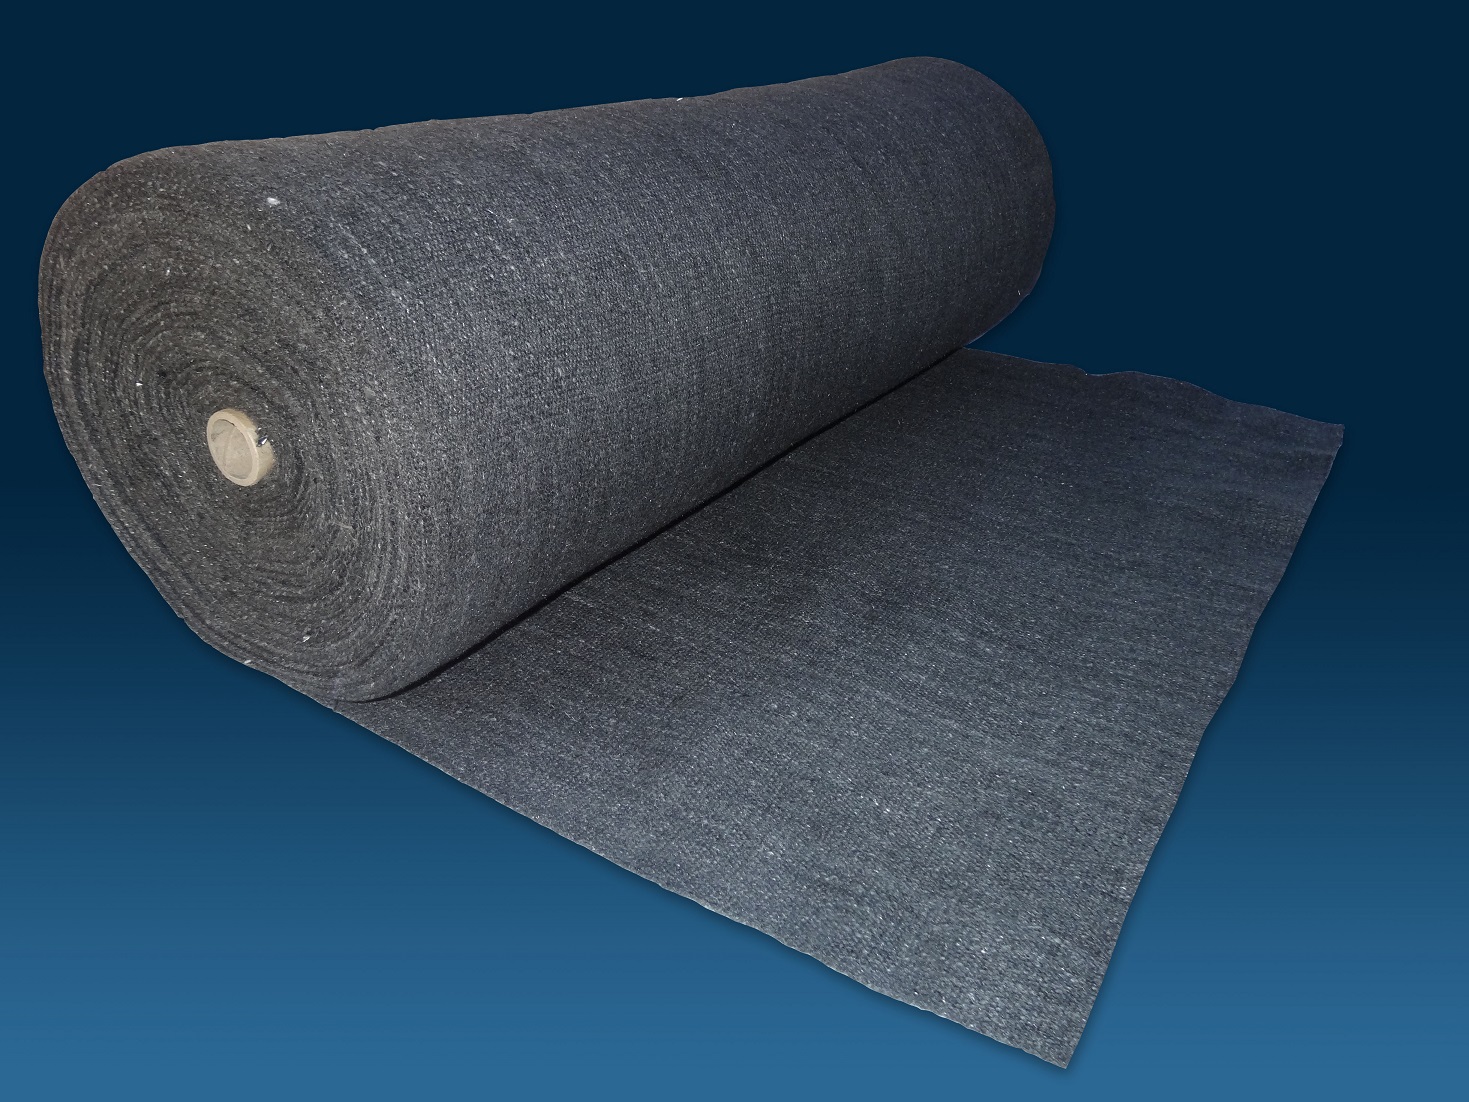 Carbon fiber blended cloth